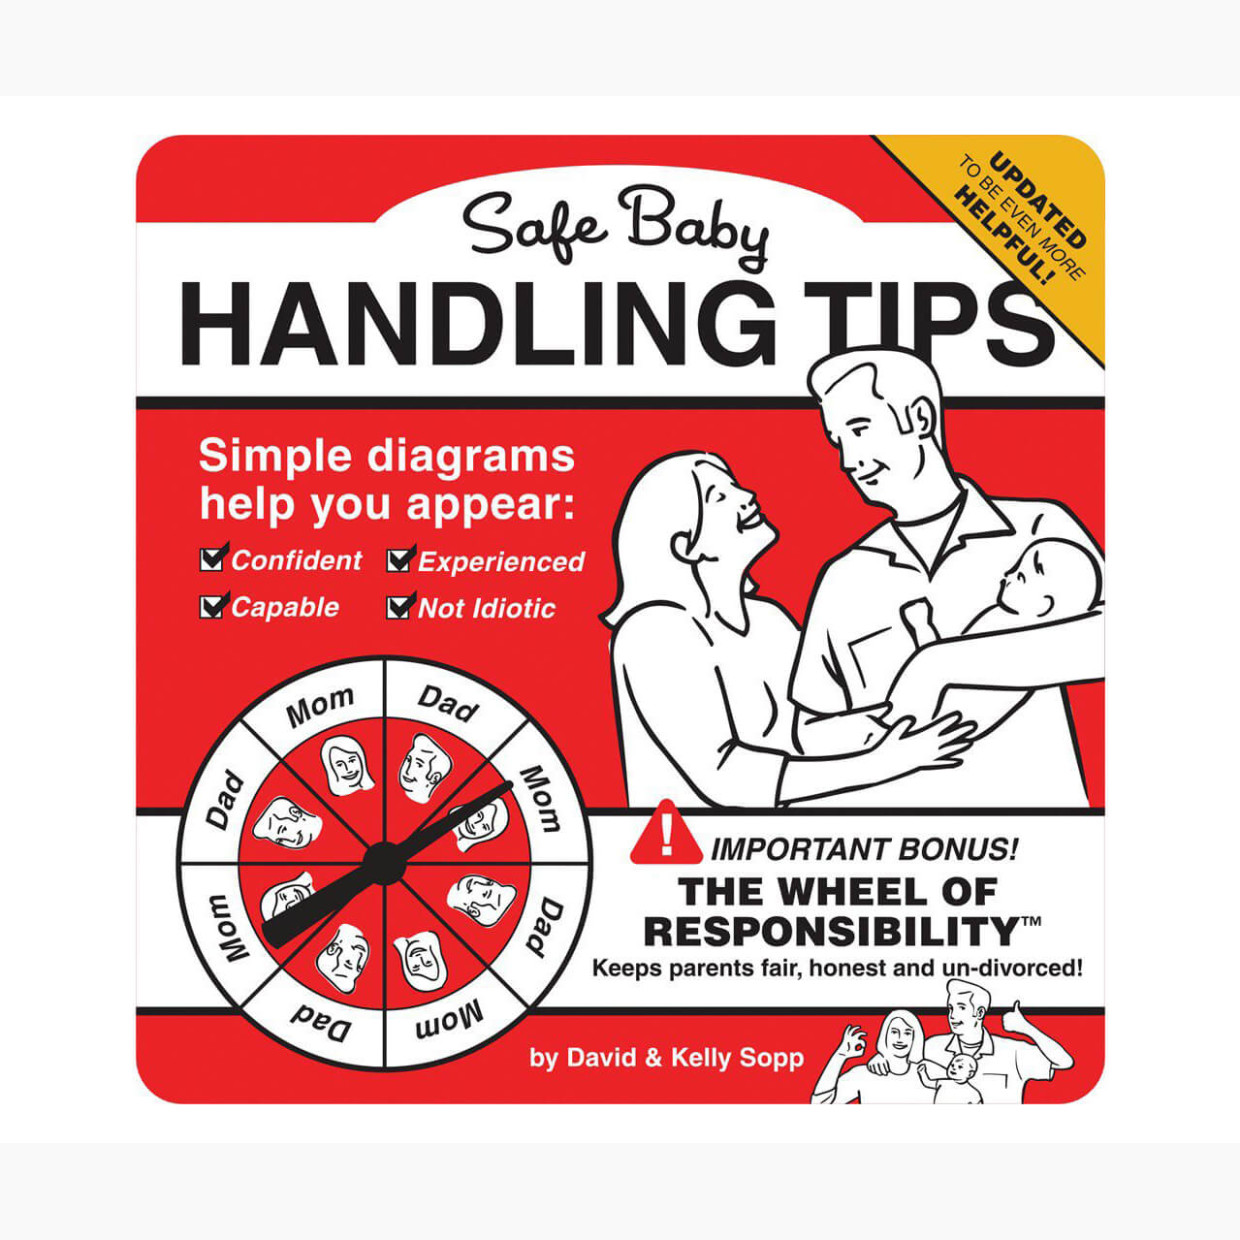 Safe Baby Handling Tips.